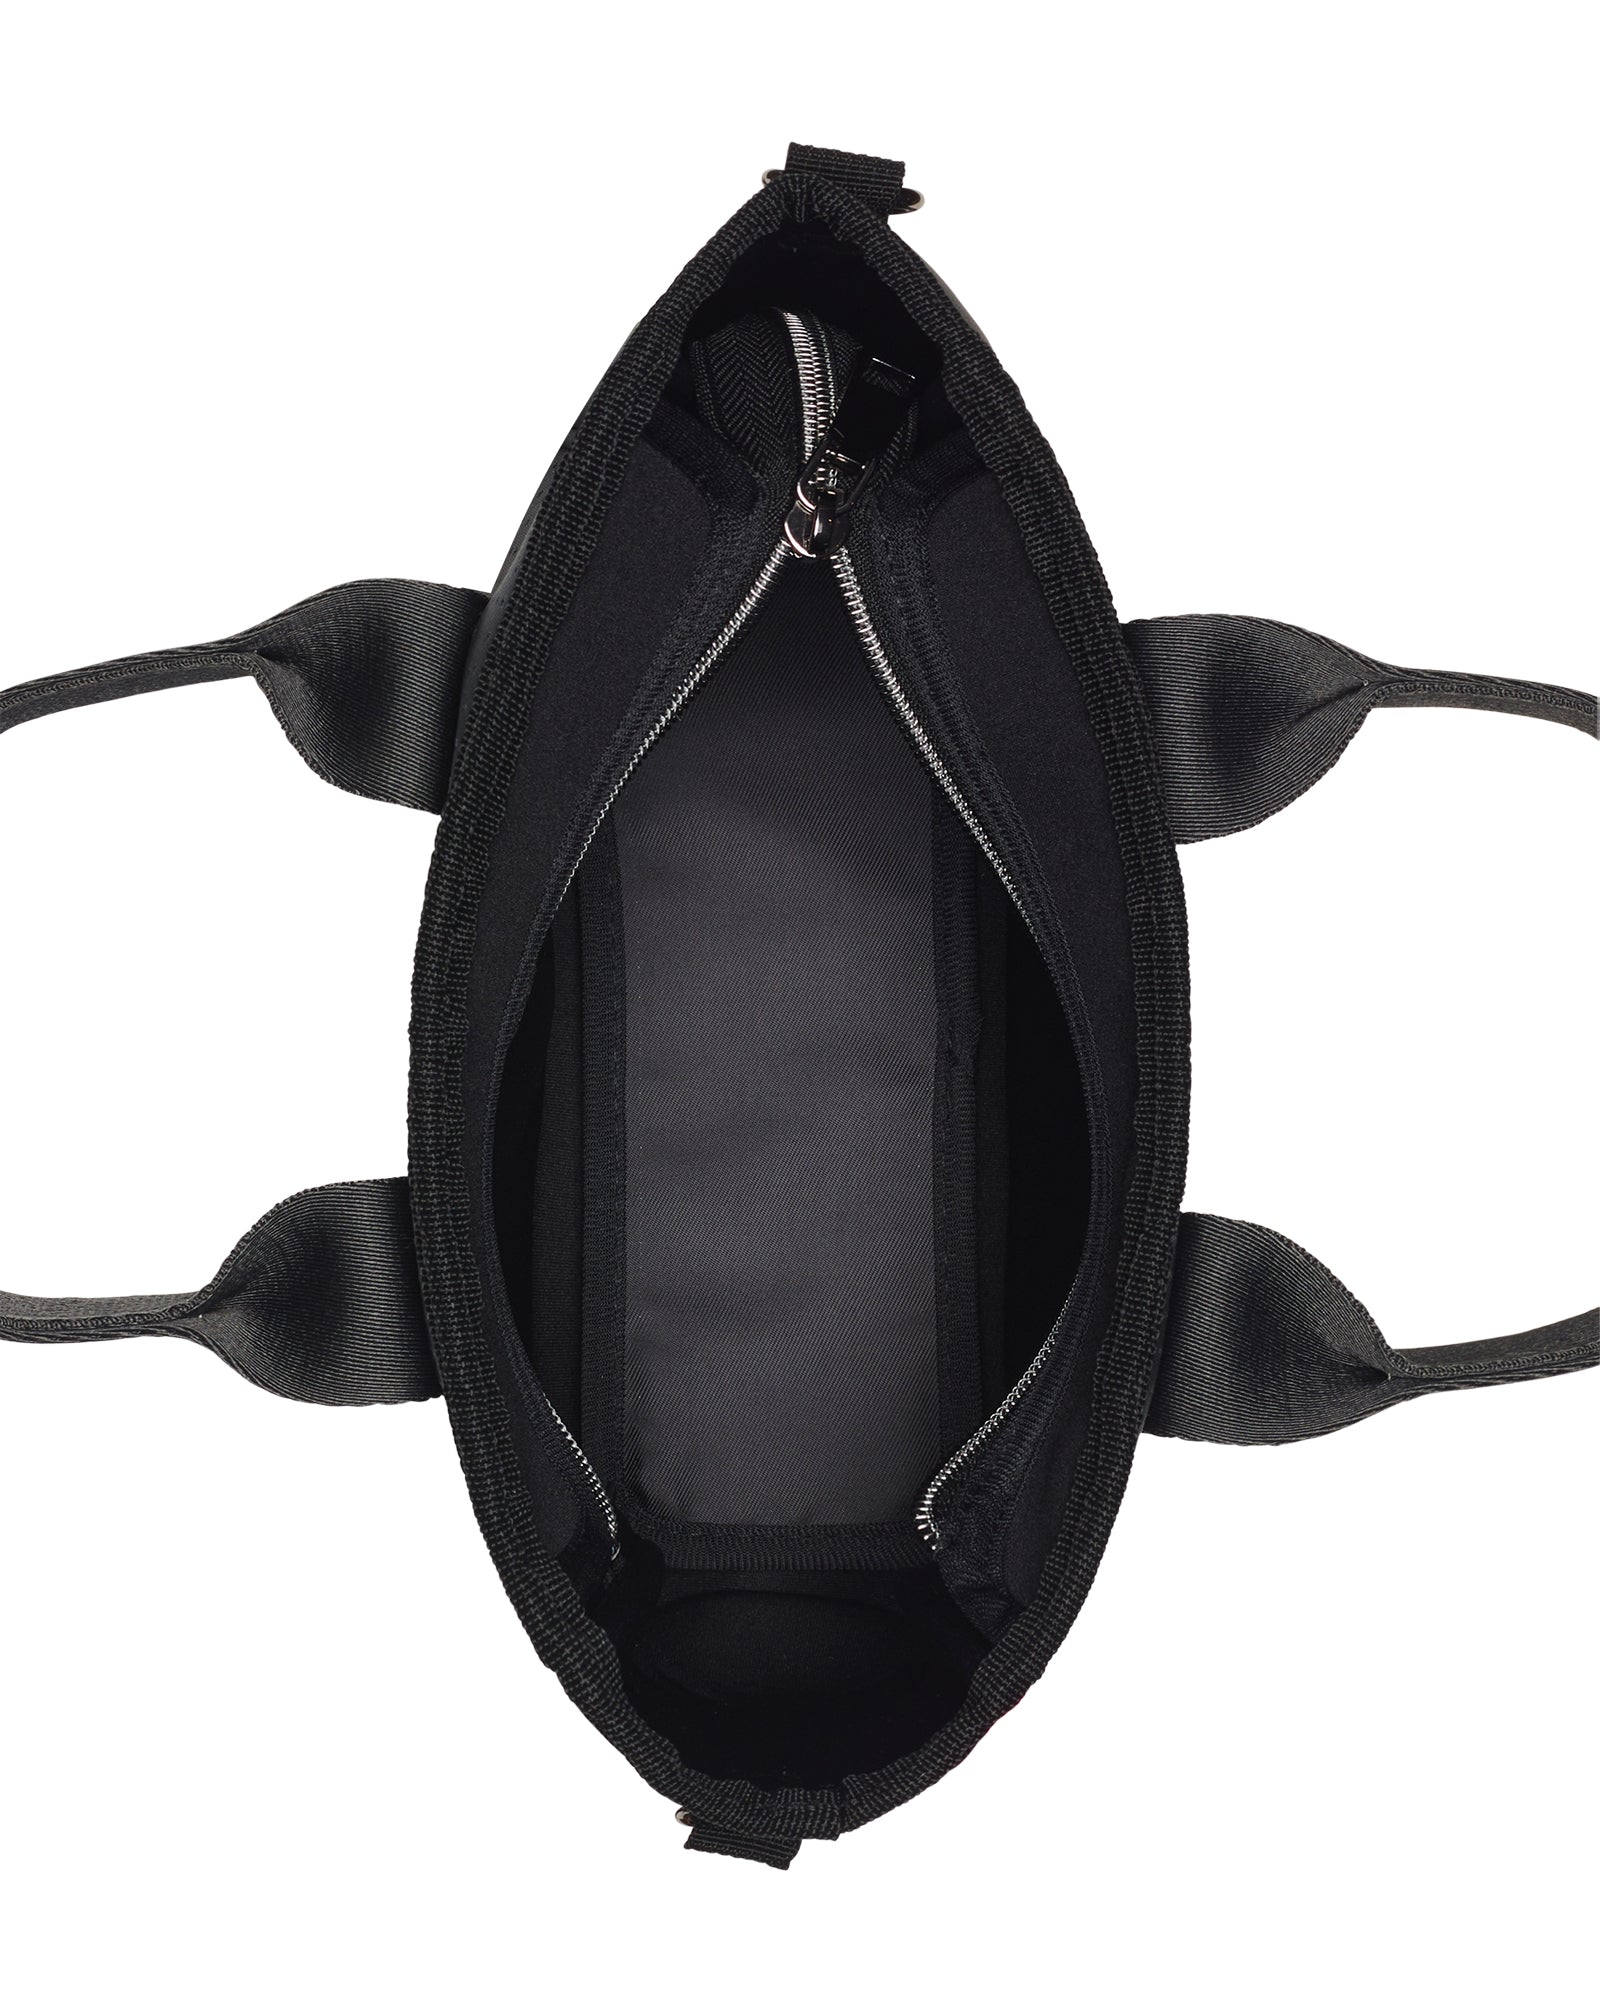 The Mila Bag (BLACK) Neoprene Crossbody / Hand Bag